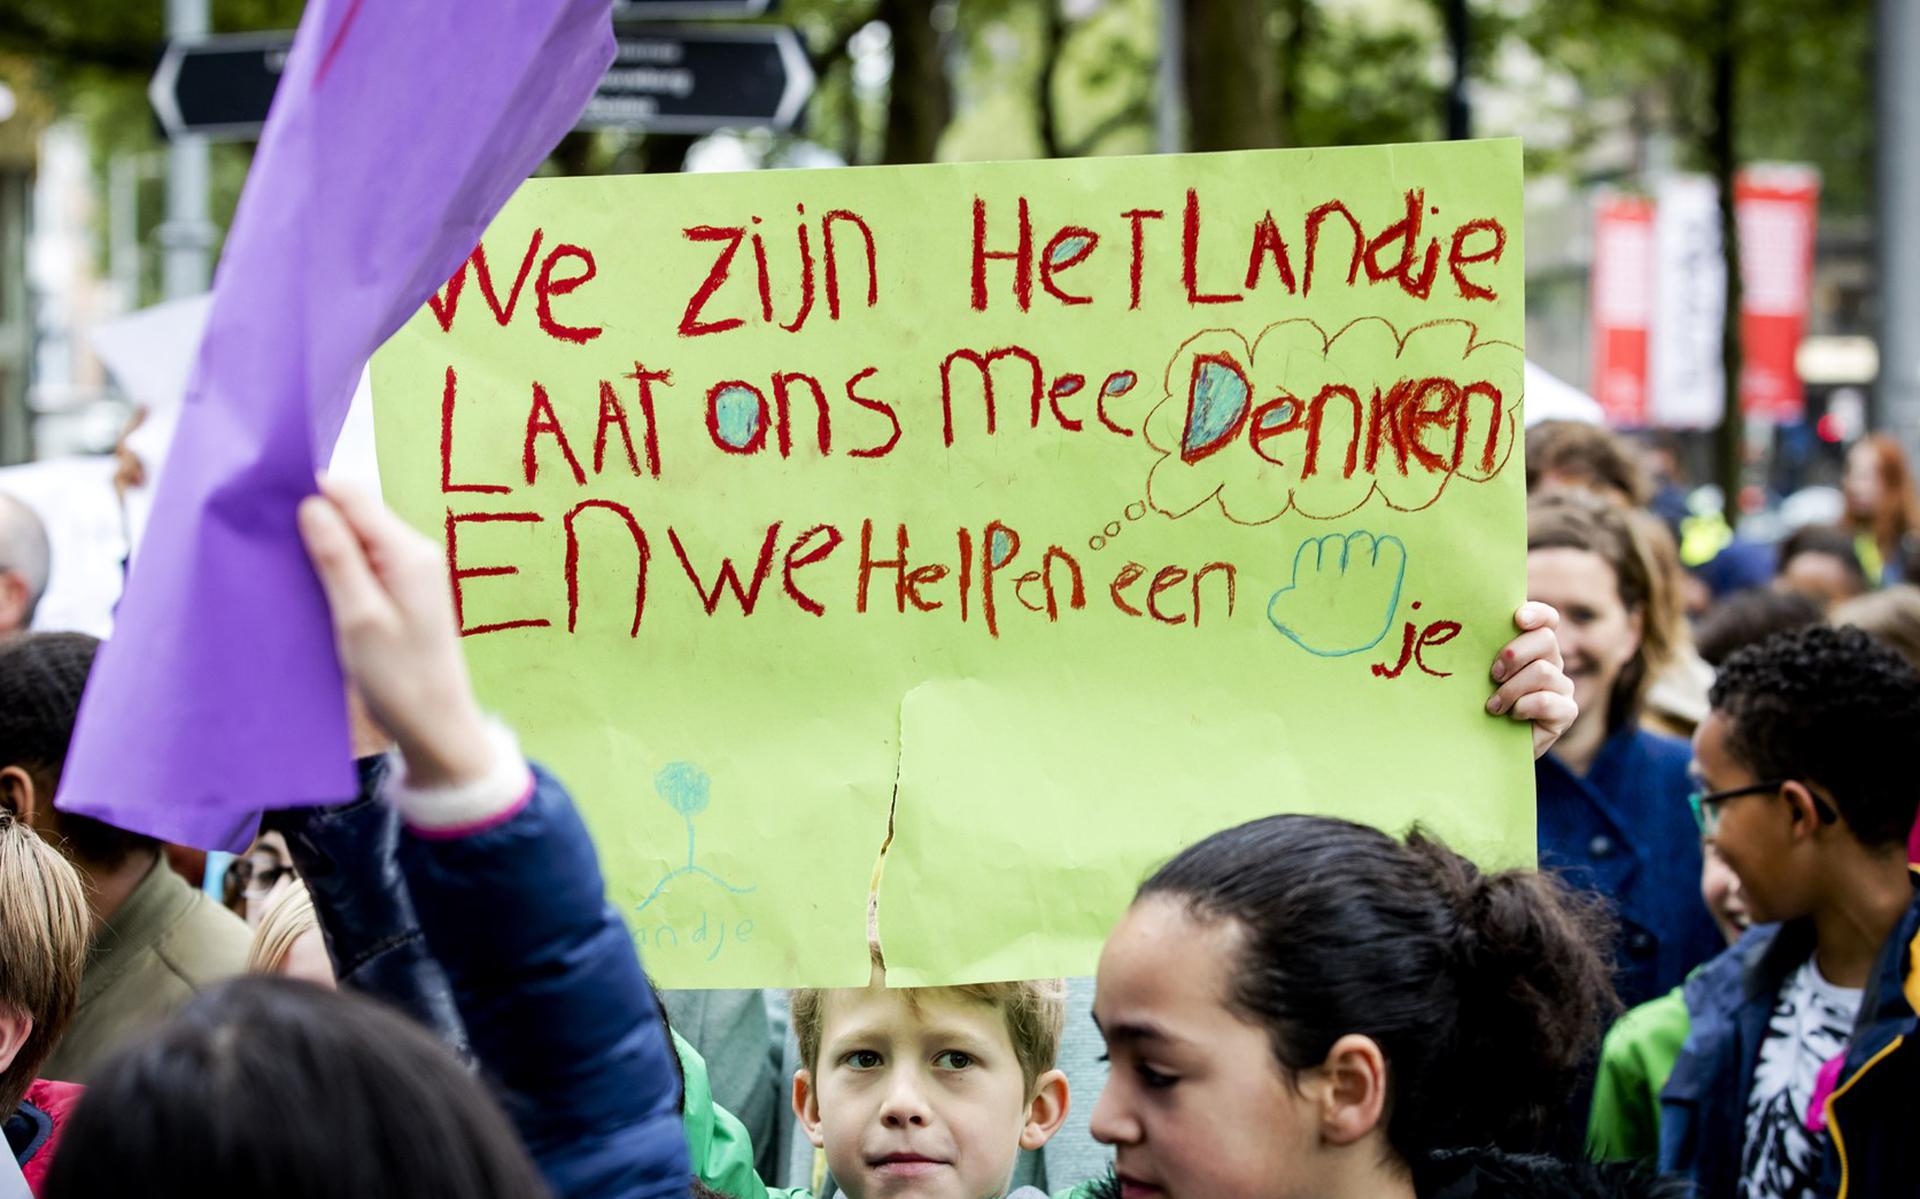 Basisschoolleerlingen in Rotterdam willen meedenken over de toekomst van hun stad, mei 2016. 